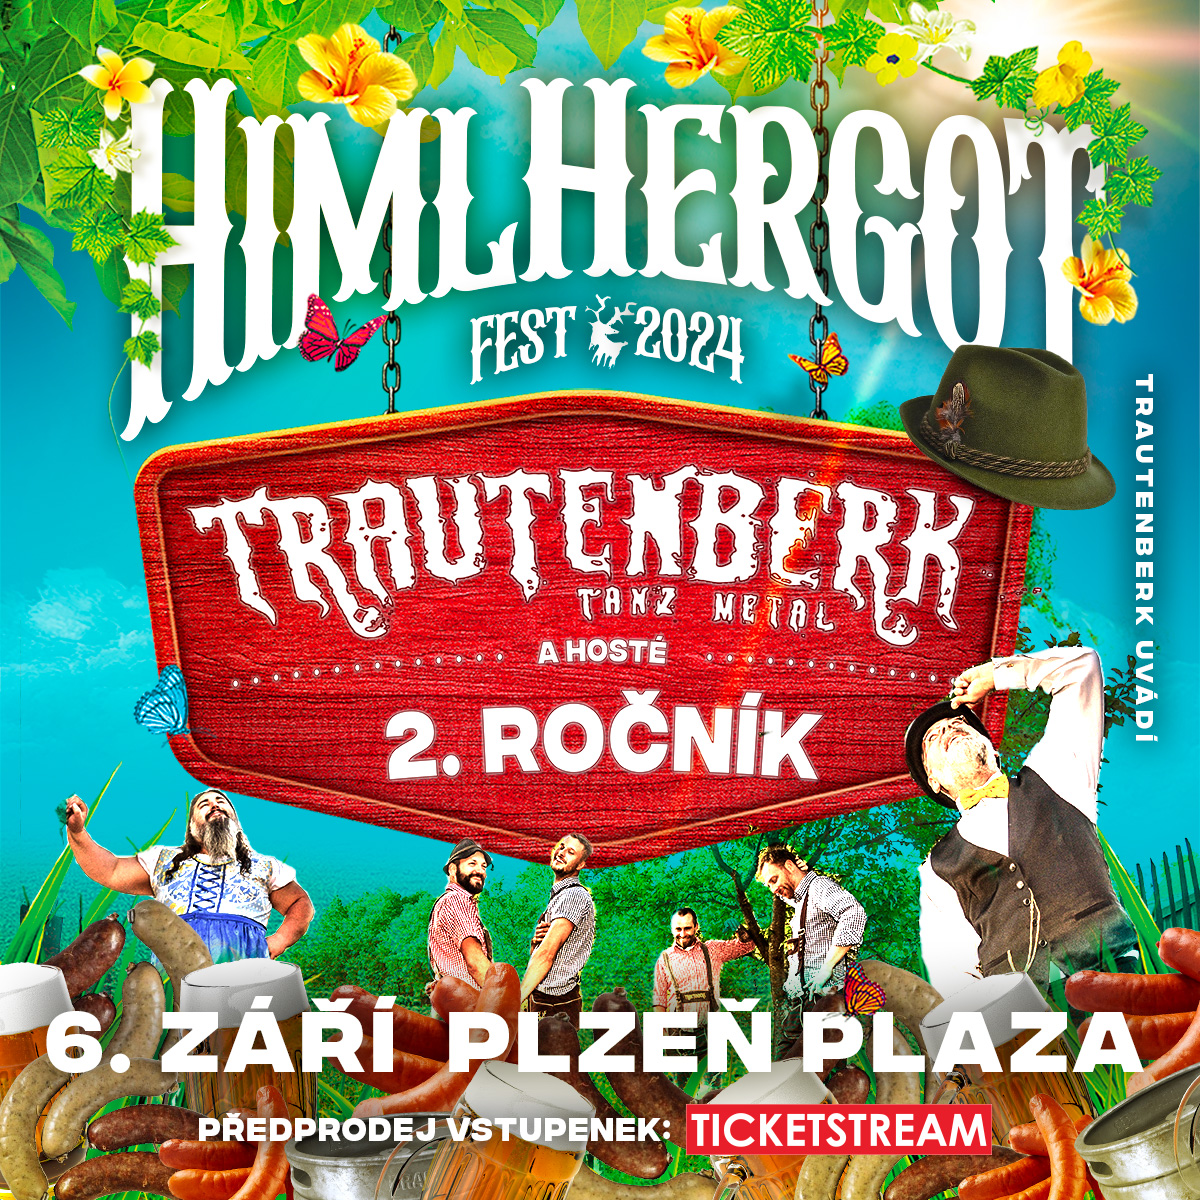 HimlHergotFest 2024<br>Trautenberk a hosté